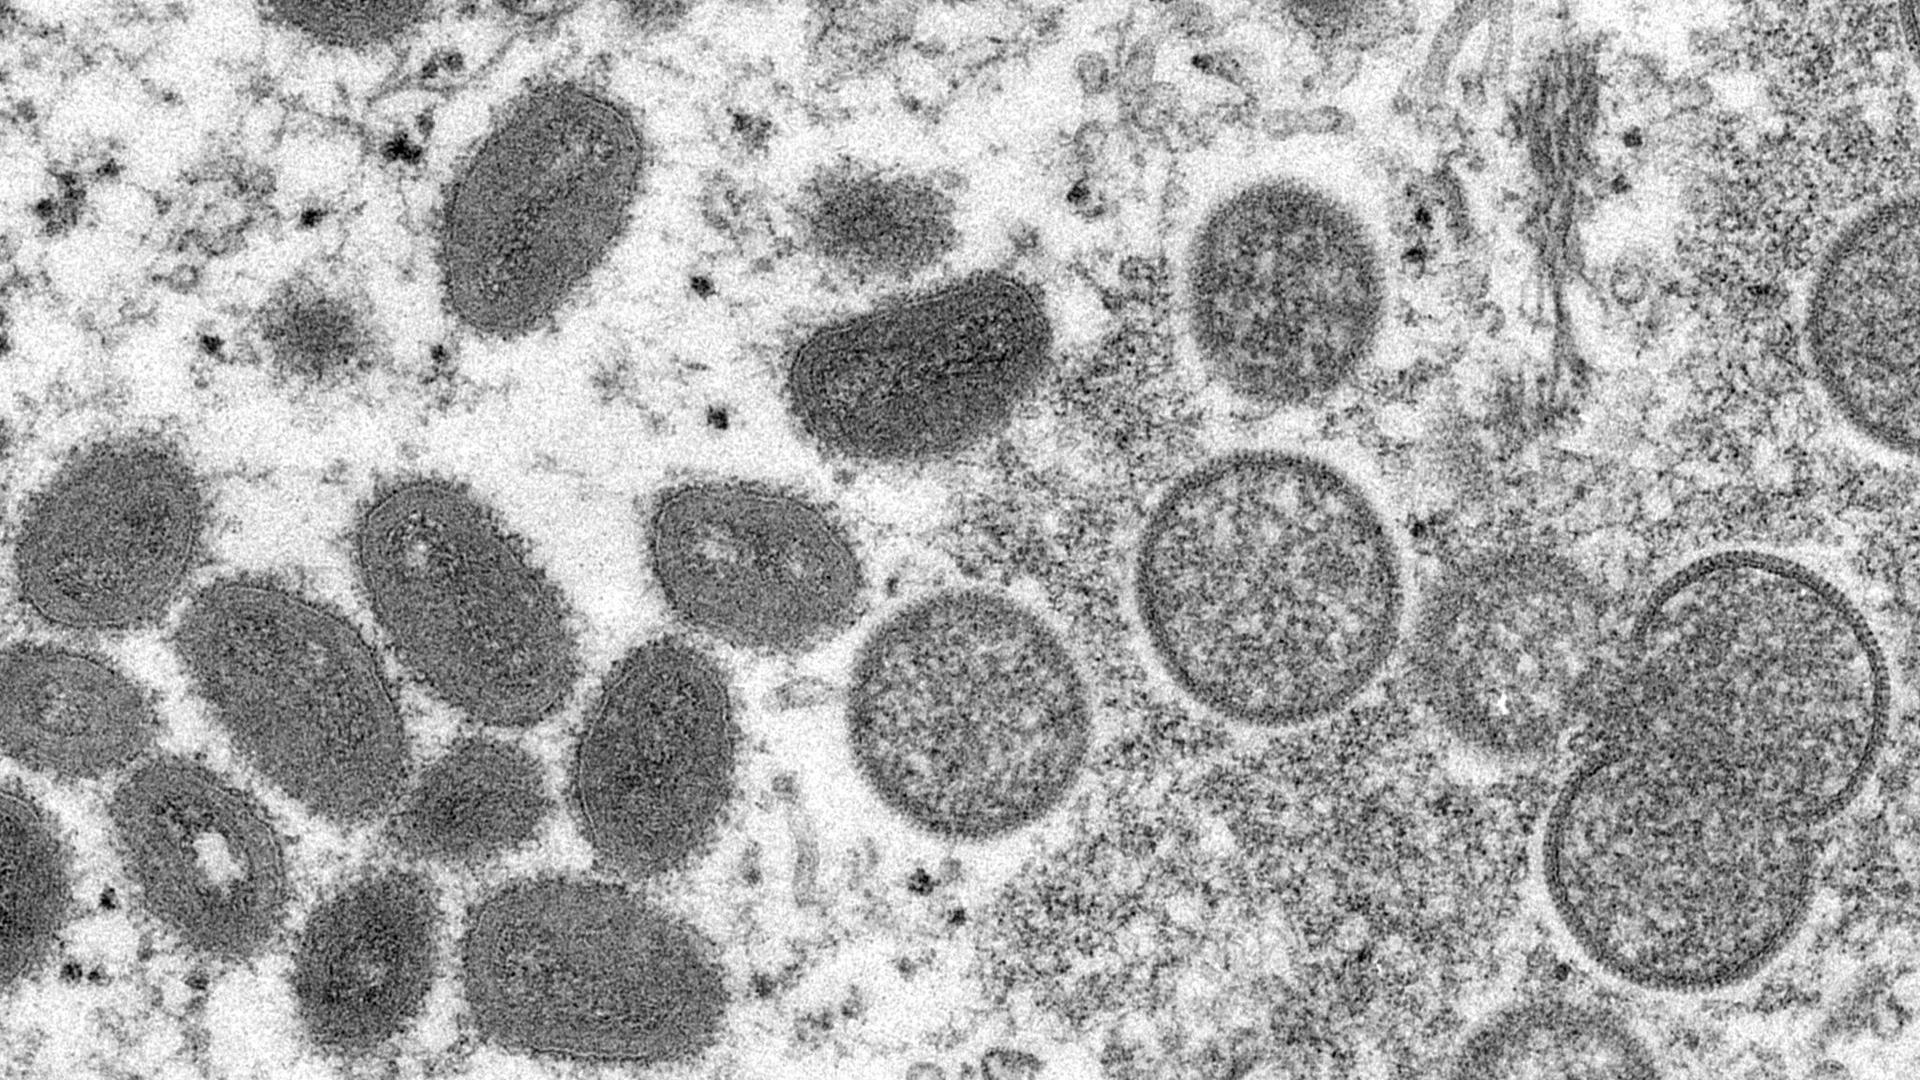 Diese elektronenmikroskopische Aufnahme zeigt reife, ovale Affenpockenviren (l) und kugelförmige unreife Virionen (r), die aus einer menschlichen Hautprobe stammen.